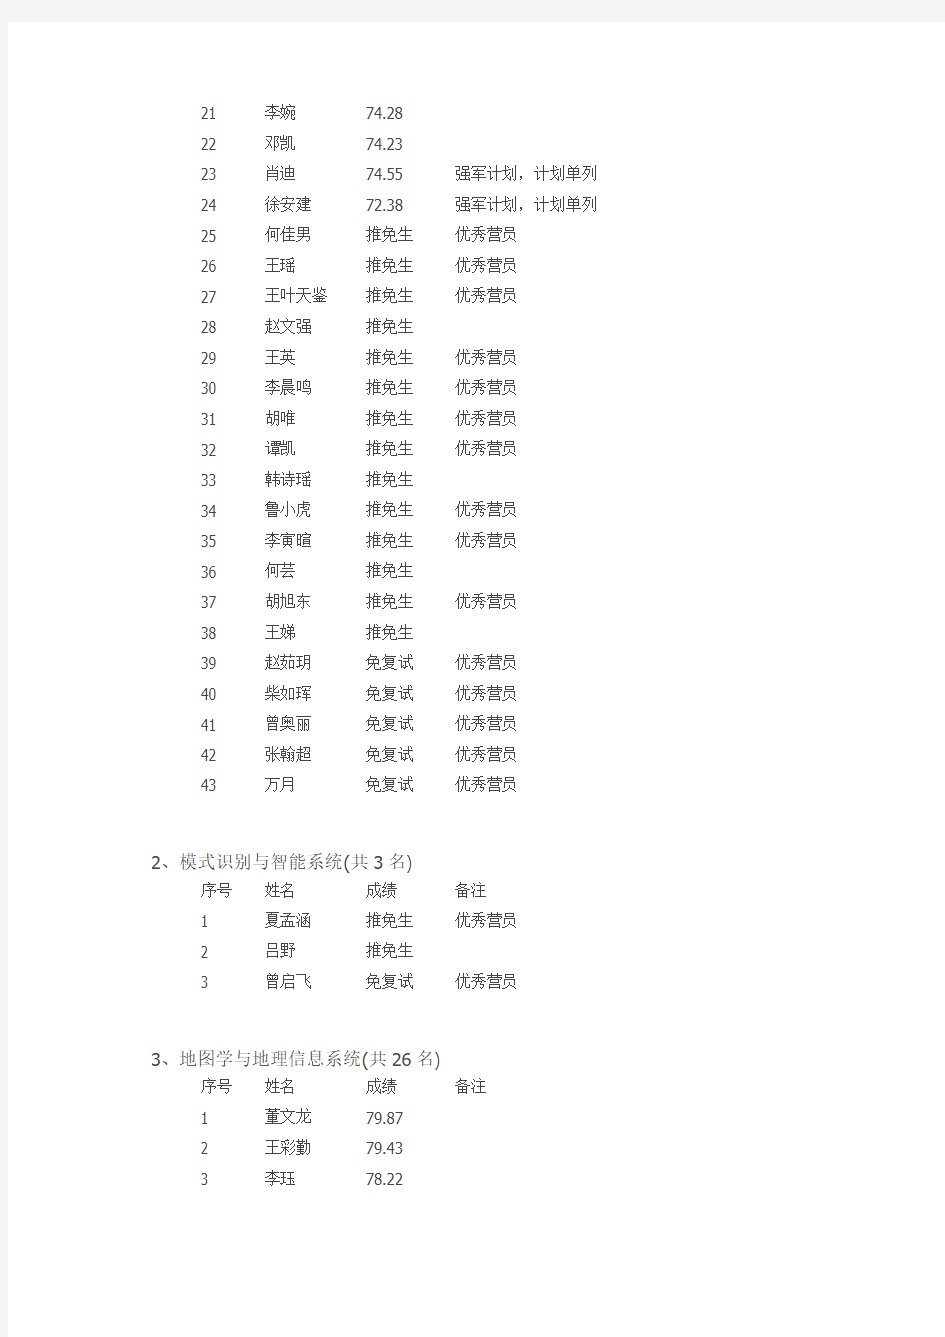 2014 武大拟录取名单